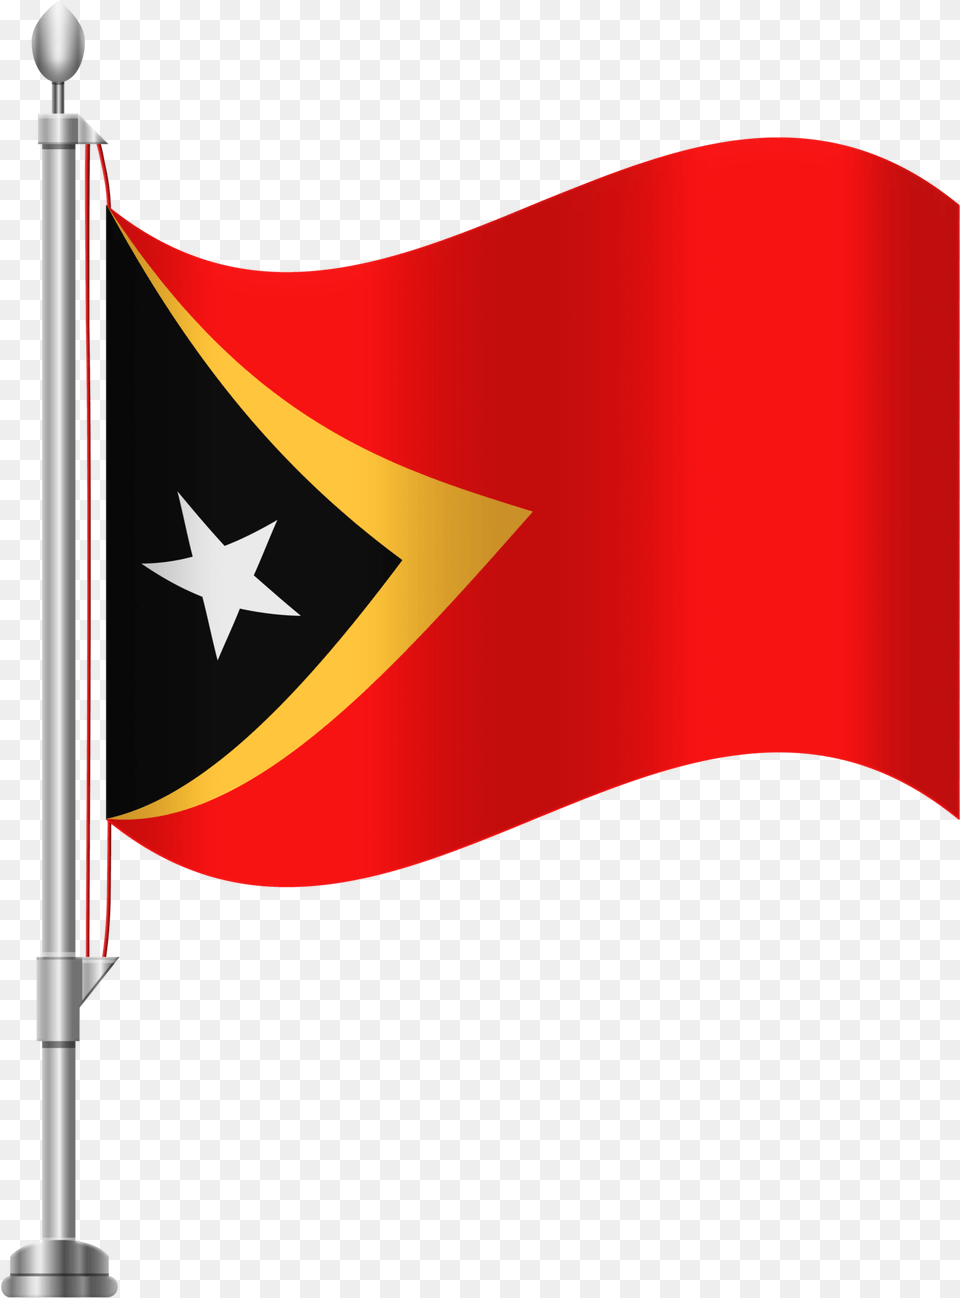 Haiti Clipart At Getdrawings Flag Of China Png